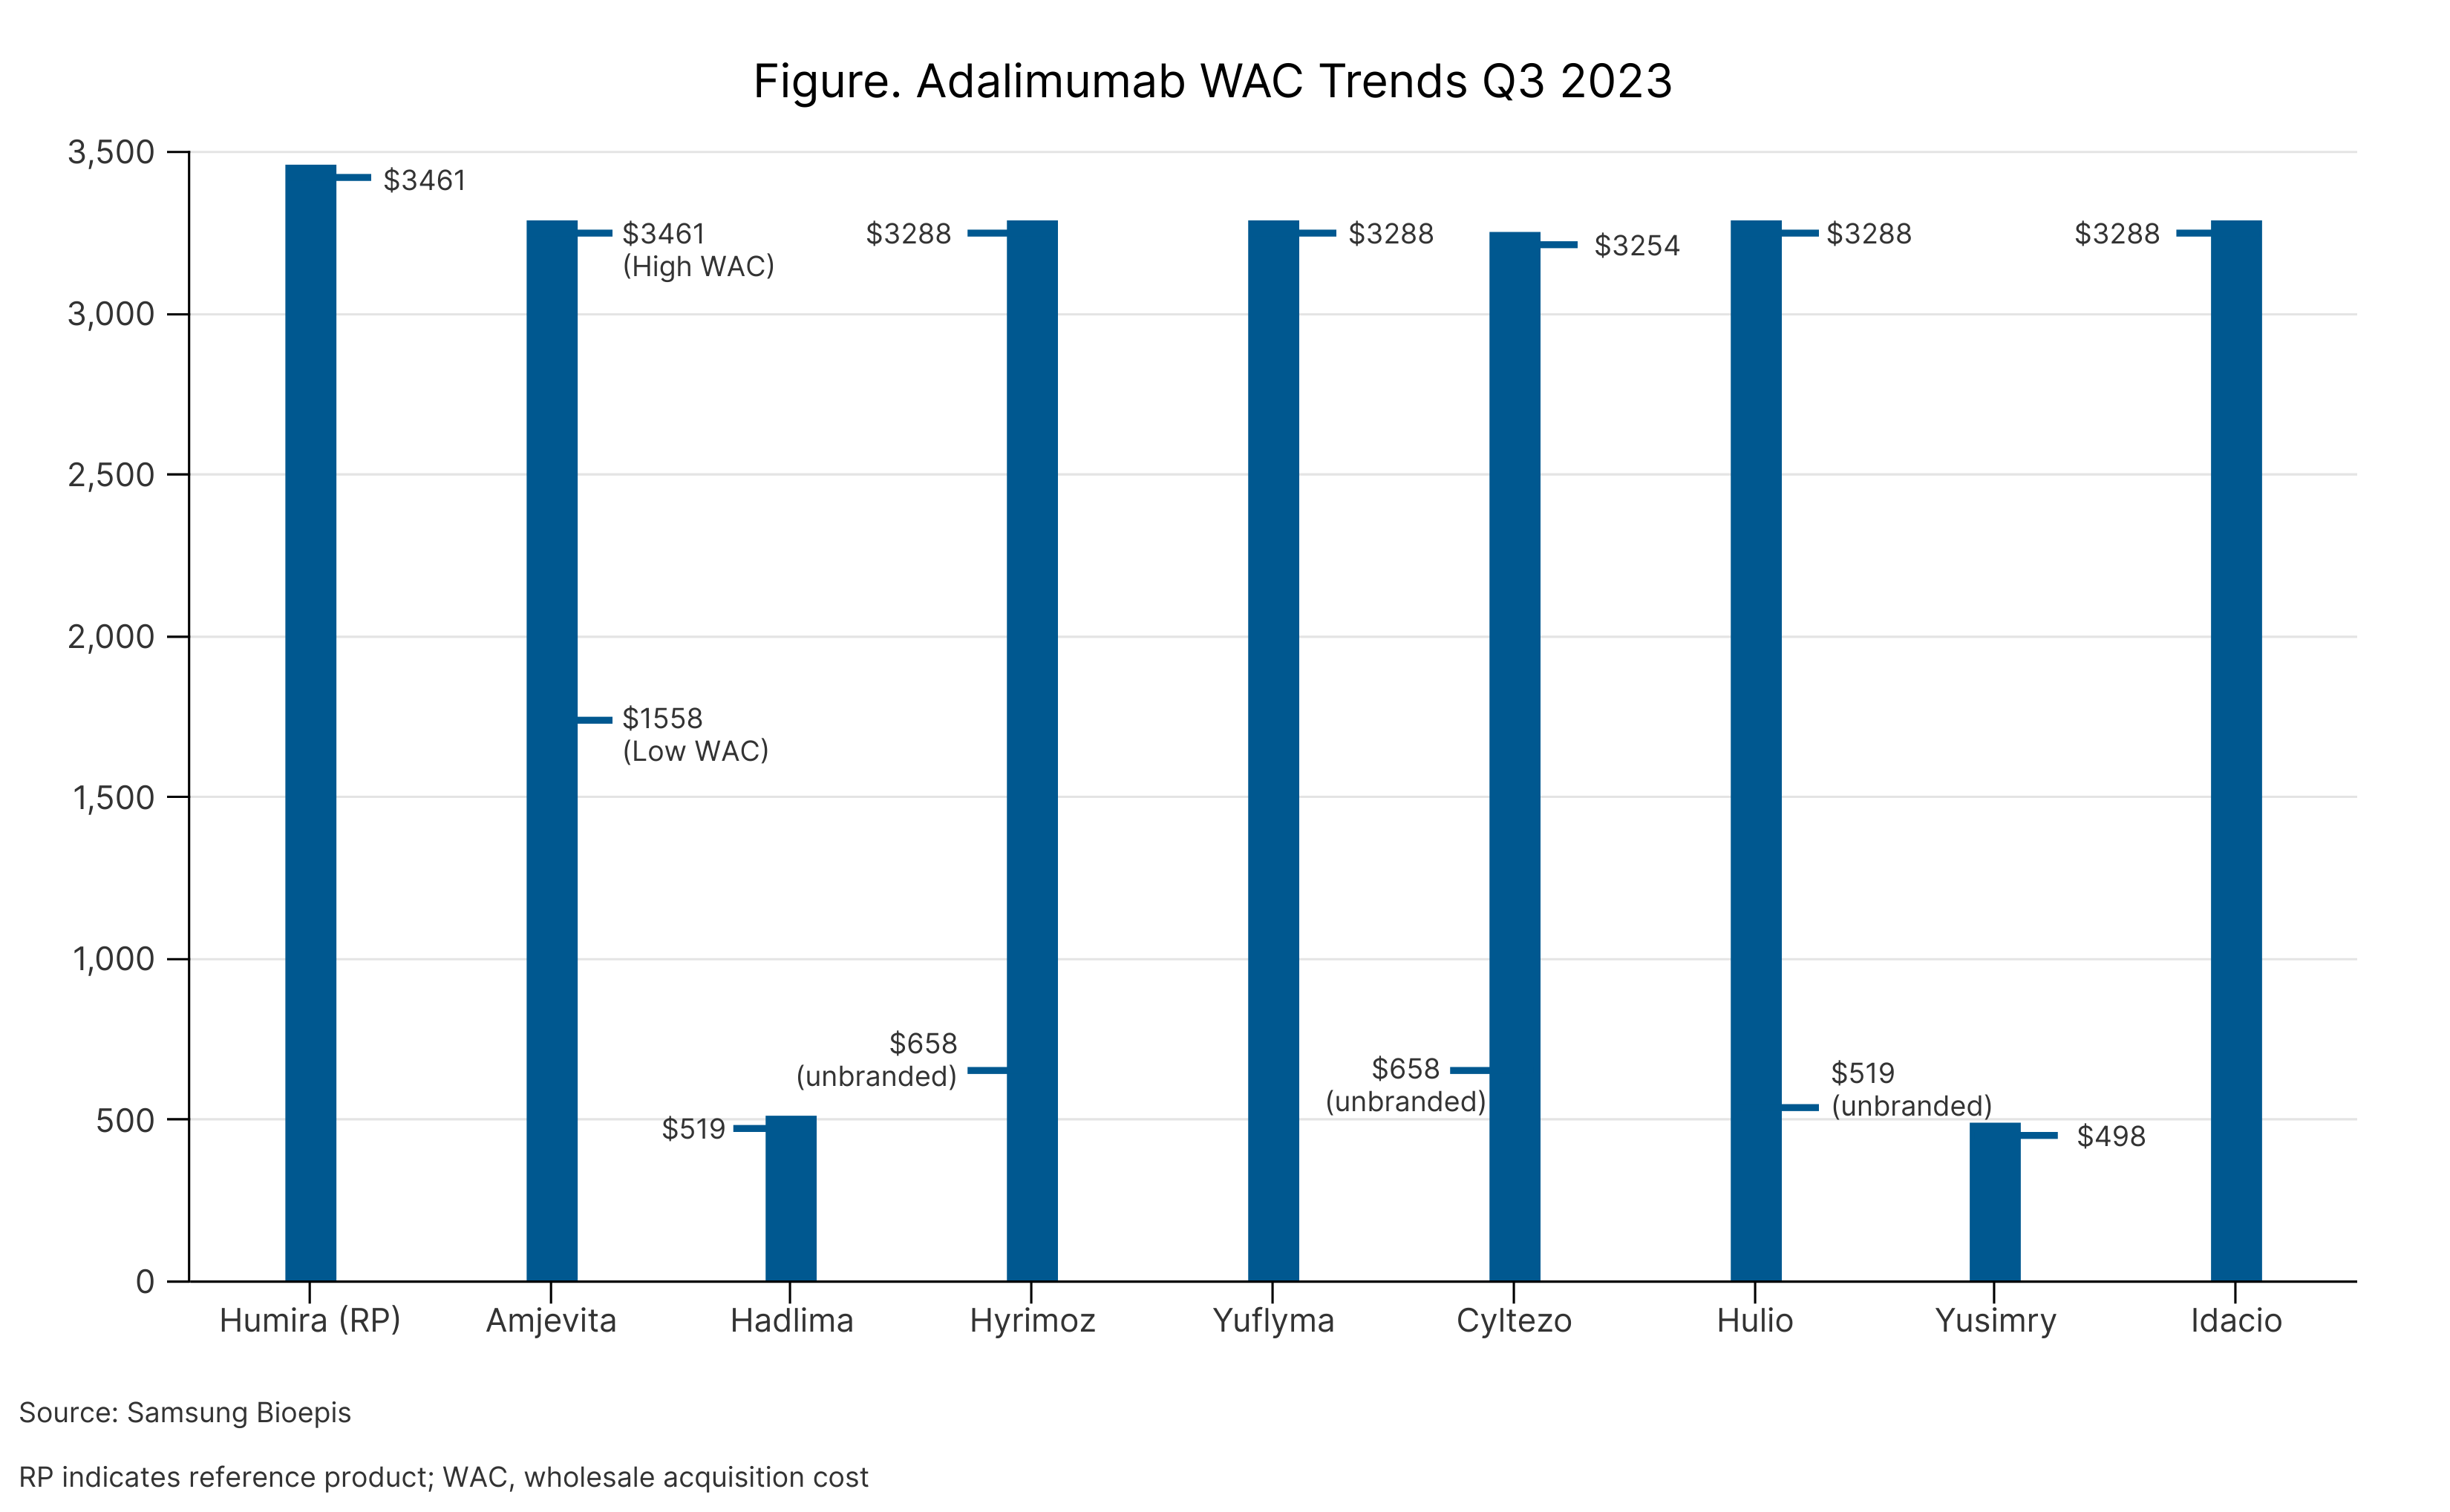 Figure. Adalimumab WAC Trends Q3 2023